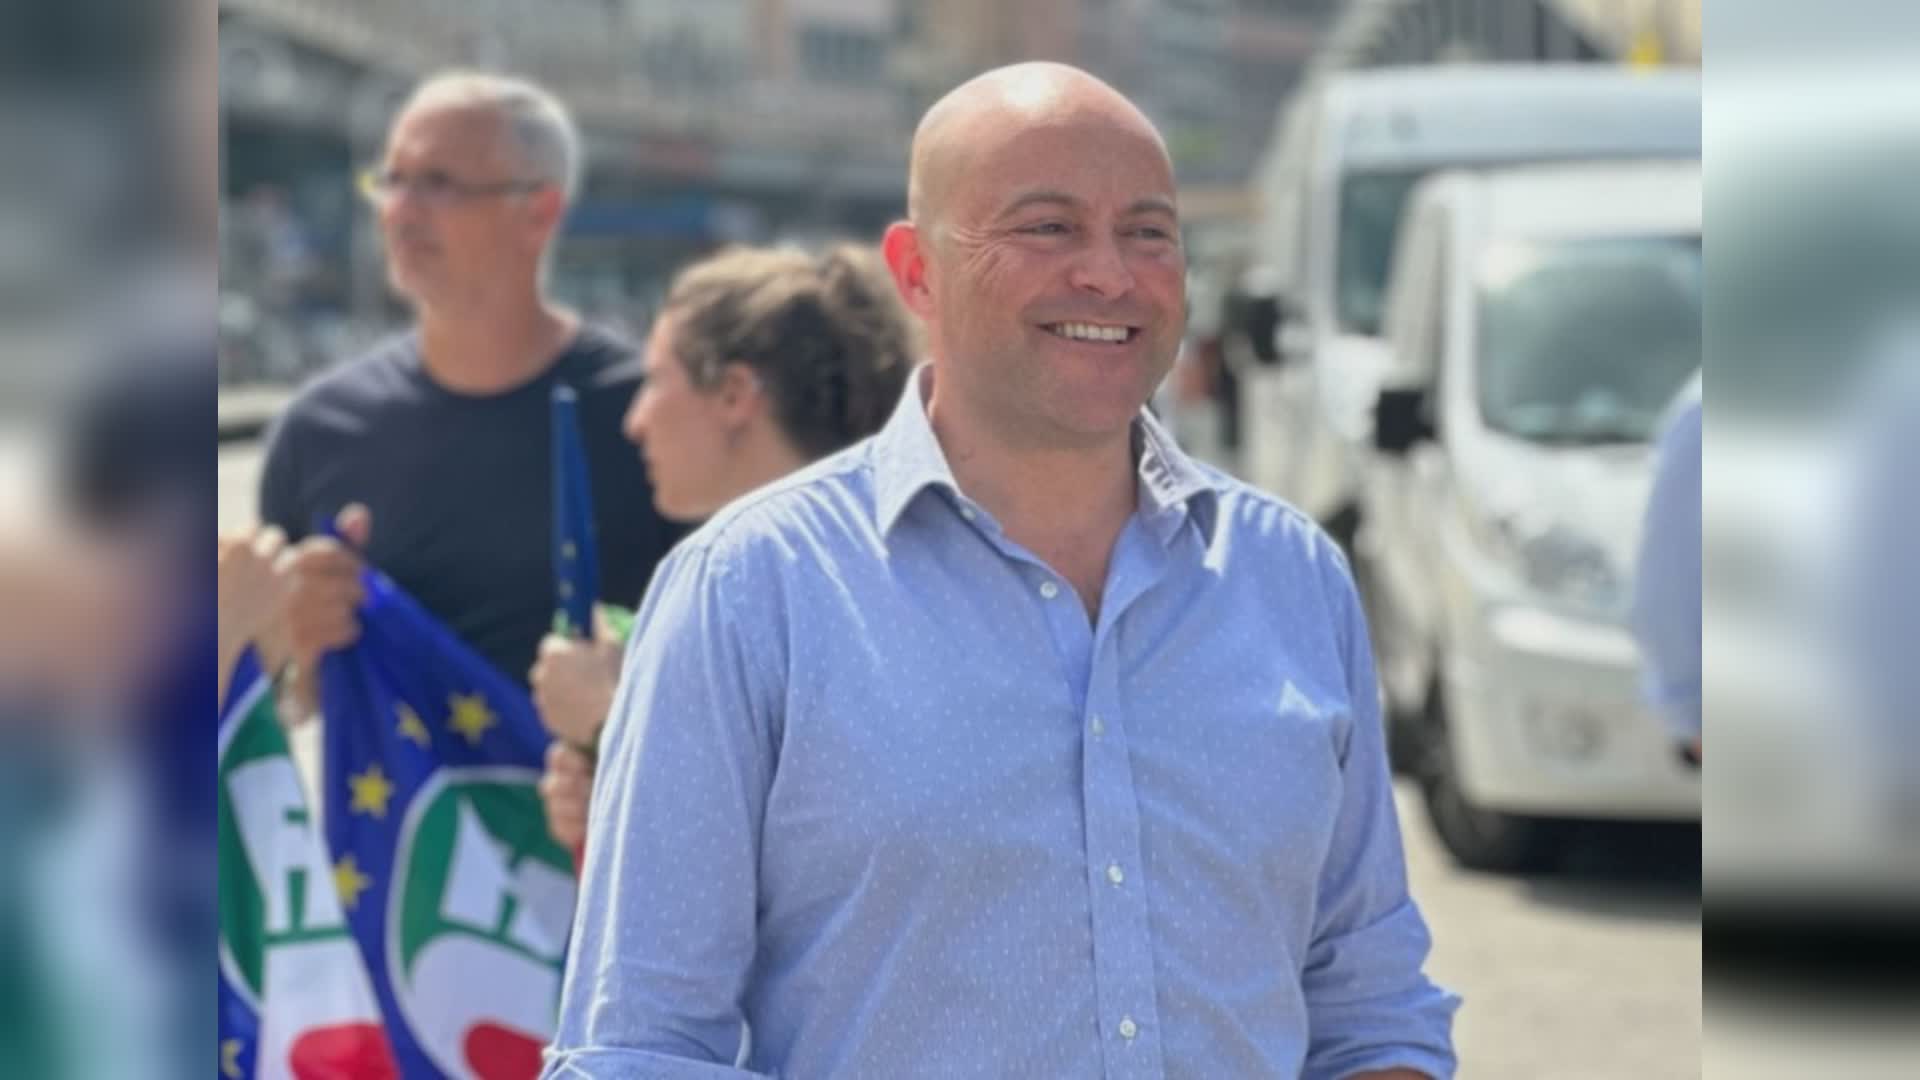 Regione Liguria, assessorato Sviluppo Economico: è Alessio Piana il successore di Benveduti. Toti: "Scelta apprezzabile, lavorerà bene"